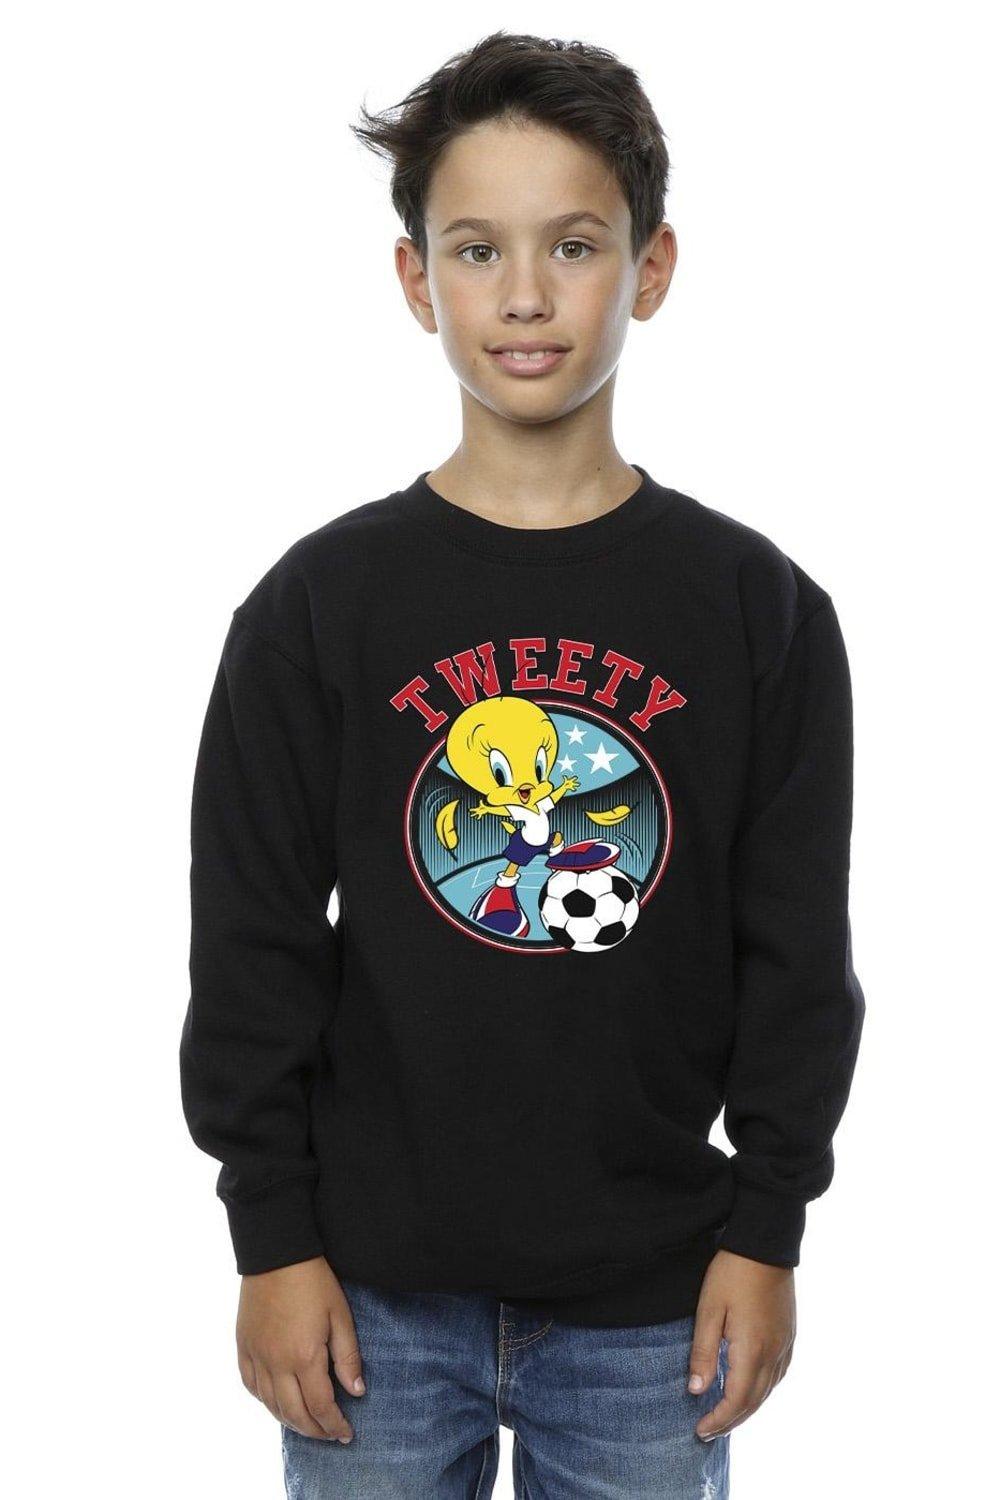 Tweety Football Circle Sweatshirt